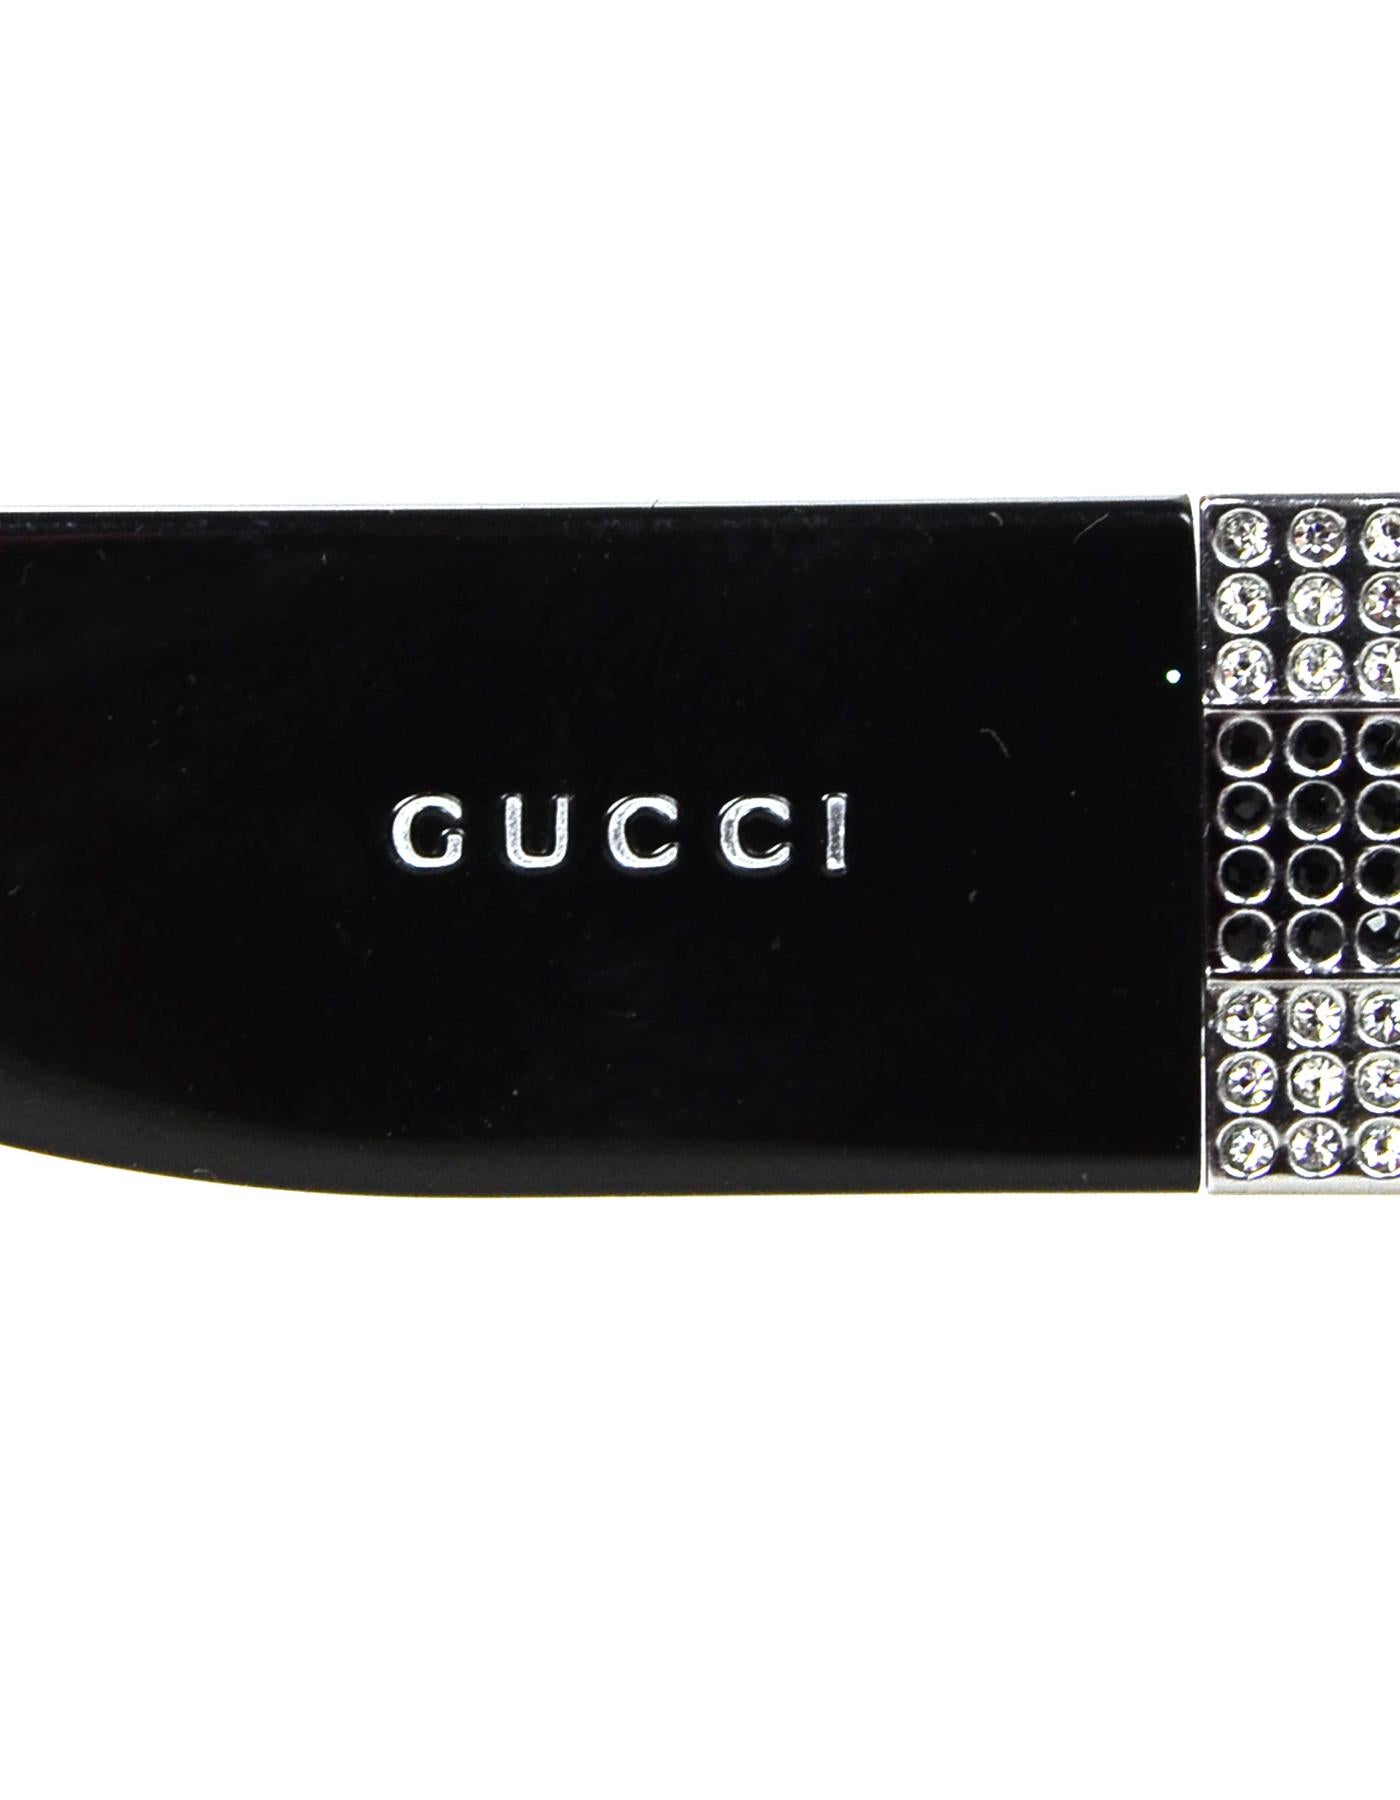 Gucci Black Sunglasses W/ Rhinestones On Arms & Case 2